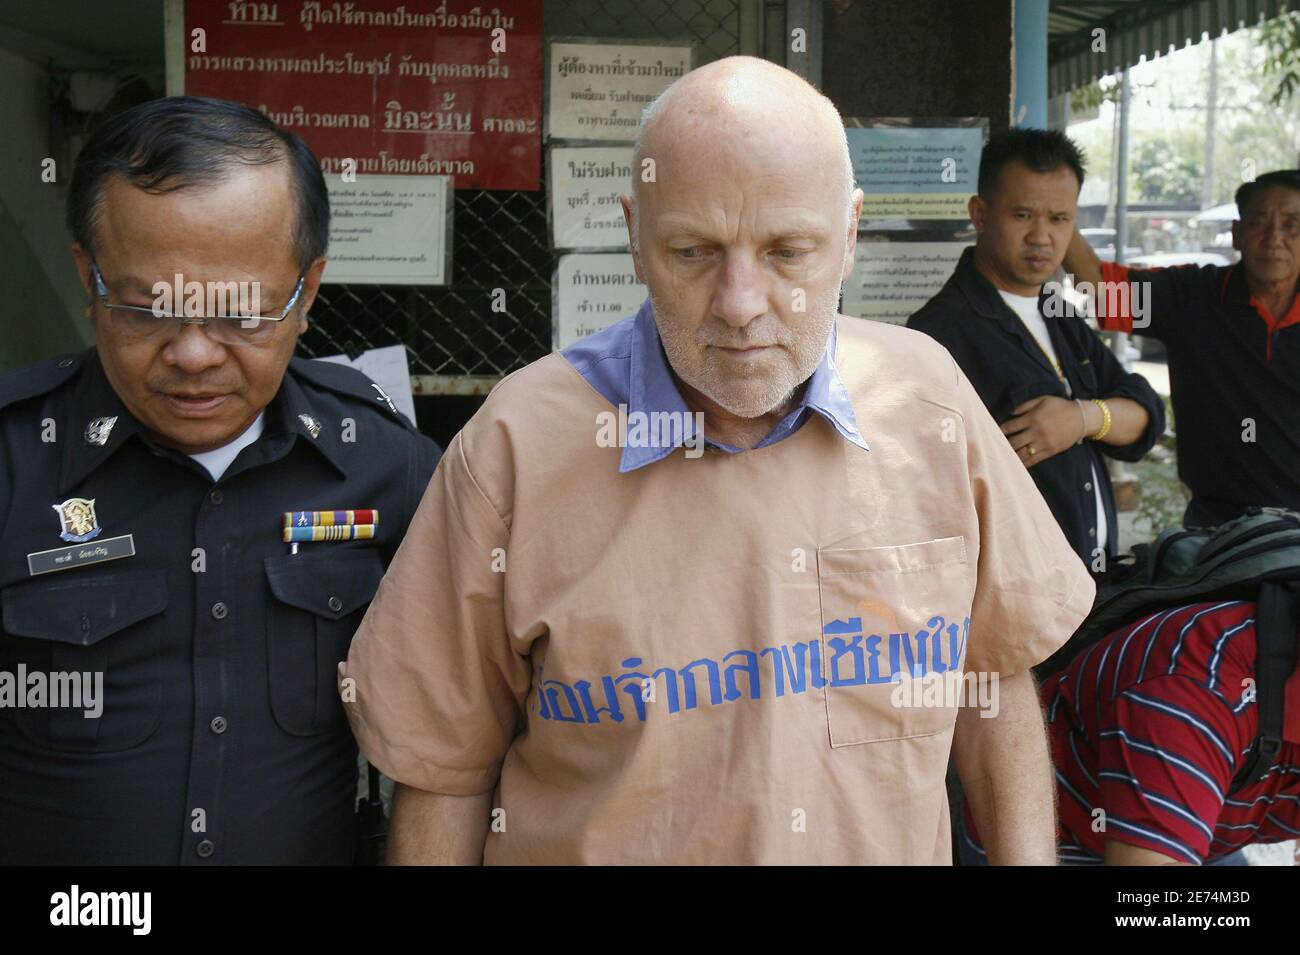 Oliver Jufer, 57 anni, arriva incatenato alla corte di Chiang mai, in Thailandia il 29 marzo 2007. Il cittadino svizzero si era dichiarato colpevole di cinque capi di lese maggiore, il crimine di offendere la dignità di un sovrano, per aver fatto fronte a diversi ritratti di re Bhumibol Adulyadej con vernice spray. Aveva affrontato fino a 75 anni di carcere, ma il tribunale lo ha condannato a 20 anni e poi ha dimezzato il mandato perché Jufer aveva confessato. Foto di Patrick Durand/ABACAPRESS.COM Foto Stock